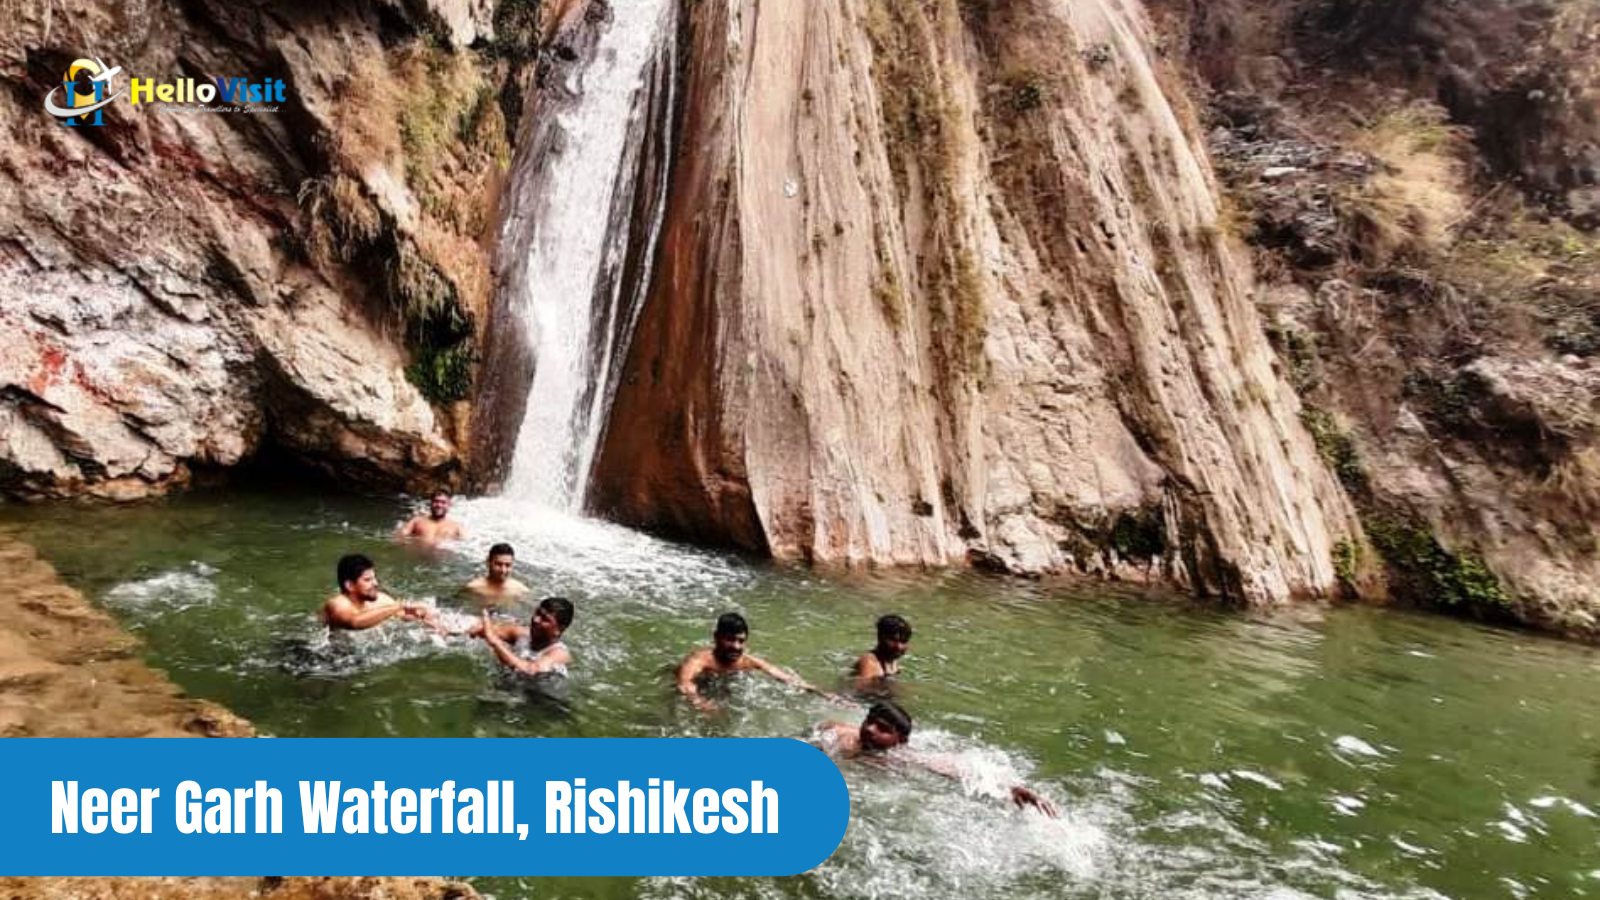 Neer Garh Waterfall, Rishikesh